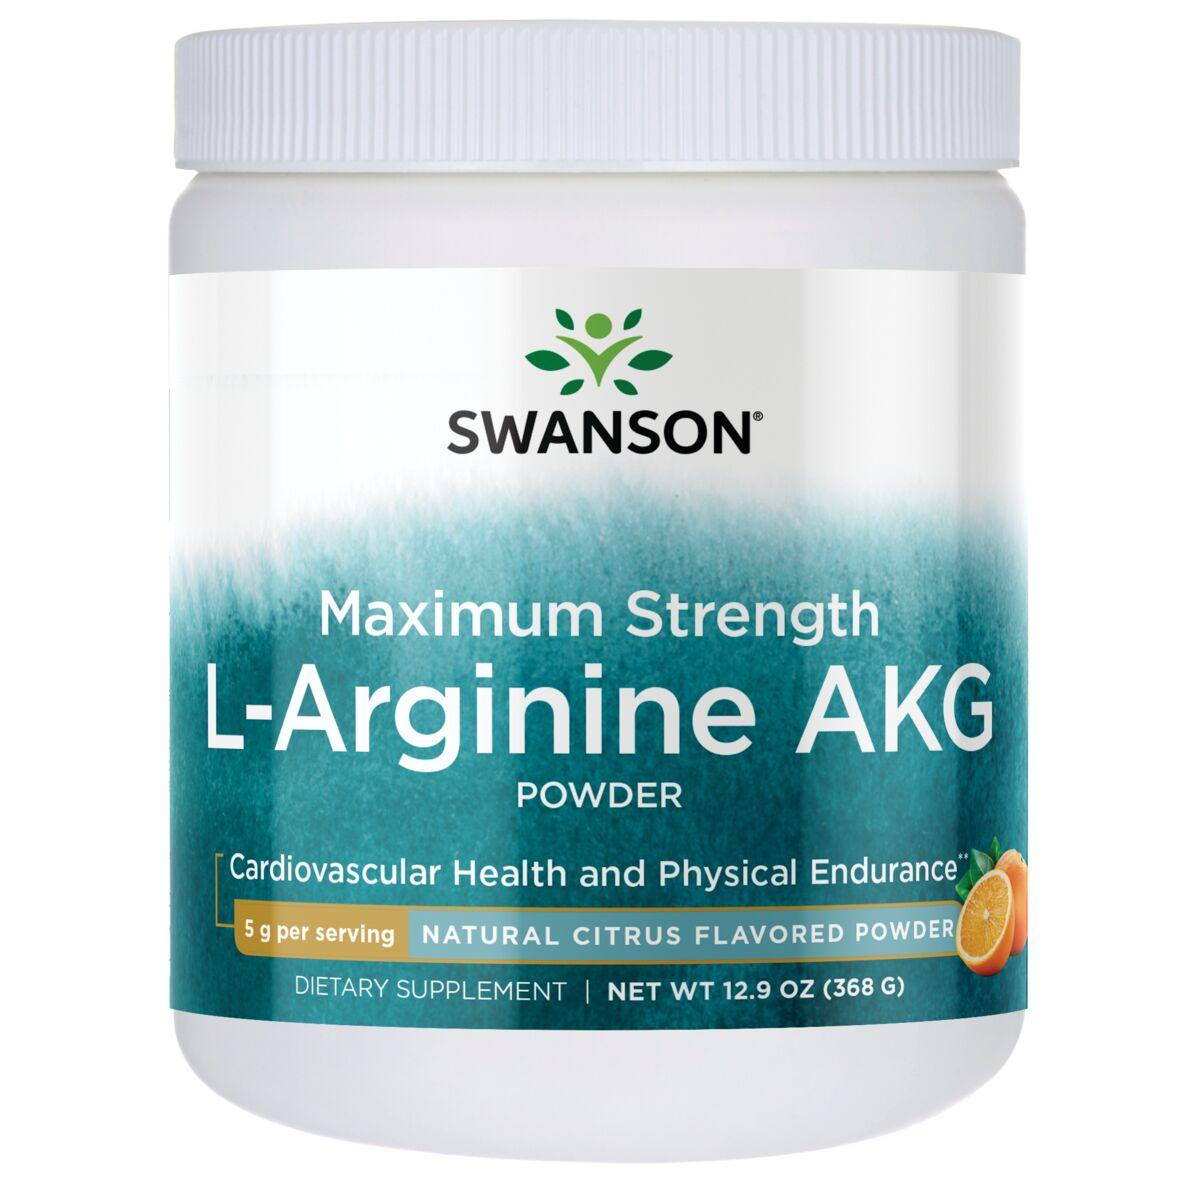 Swanson Premium Maximum Strength L-Arginine Akg Powder - Natural Citrus Flavored | 5 G 12.9 oz Powder